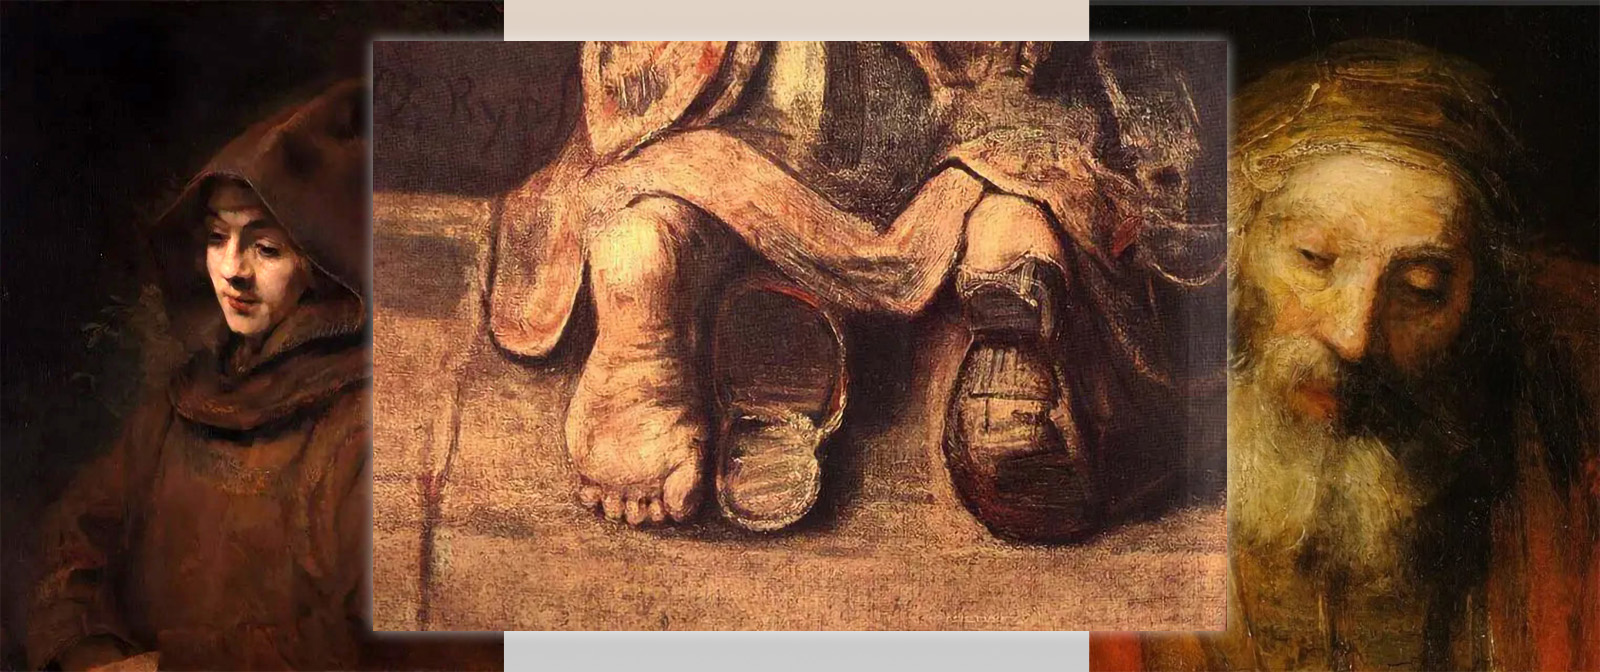 Какая трагедия предшествовала написанию картины Рембрандта «Возвращение  блудного сына» и чем она отличается от прочих полотен на эту тему?